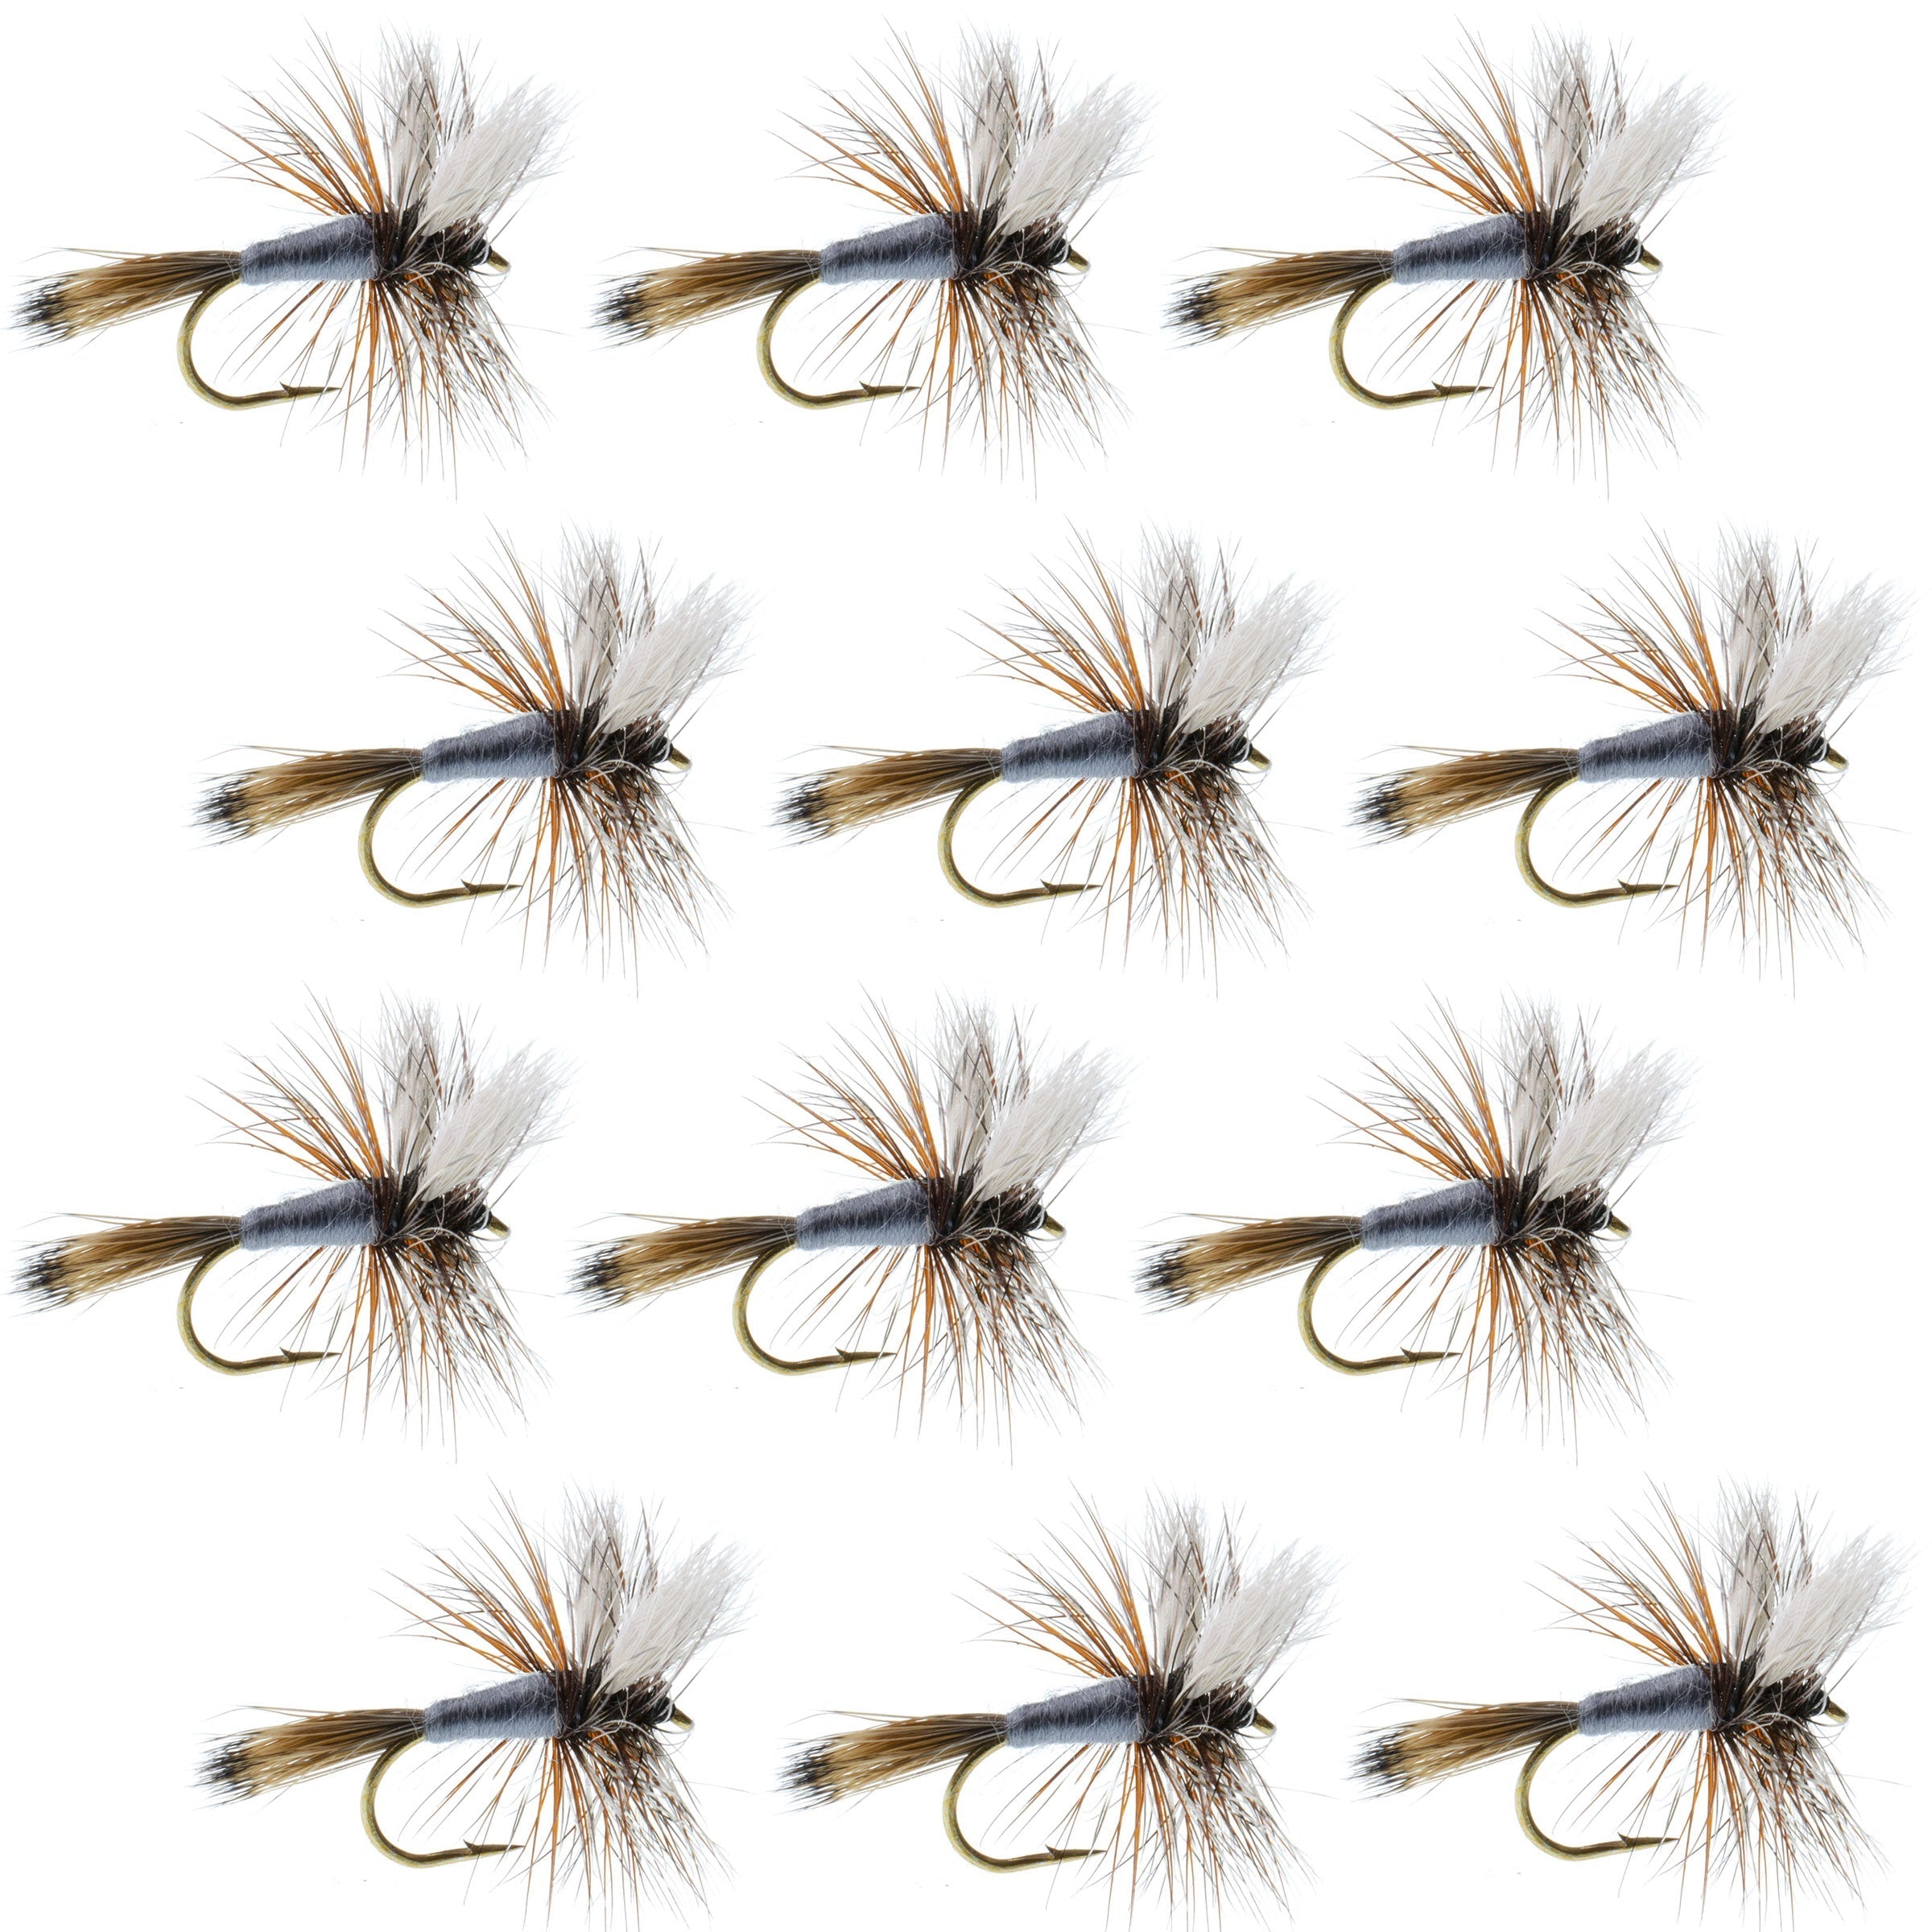 Adams Wulff Classic Dry Fly 1 Dozen Flies  Hook Size 12